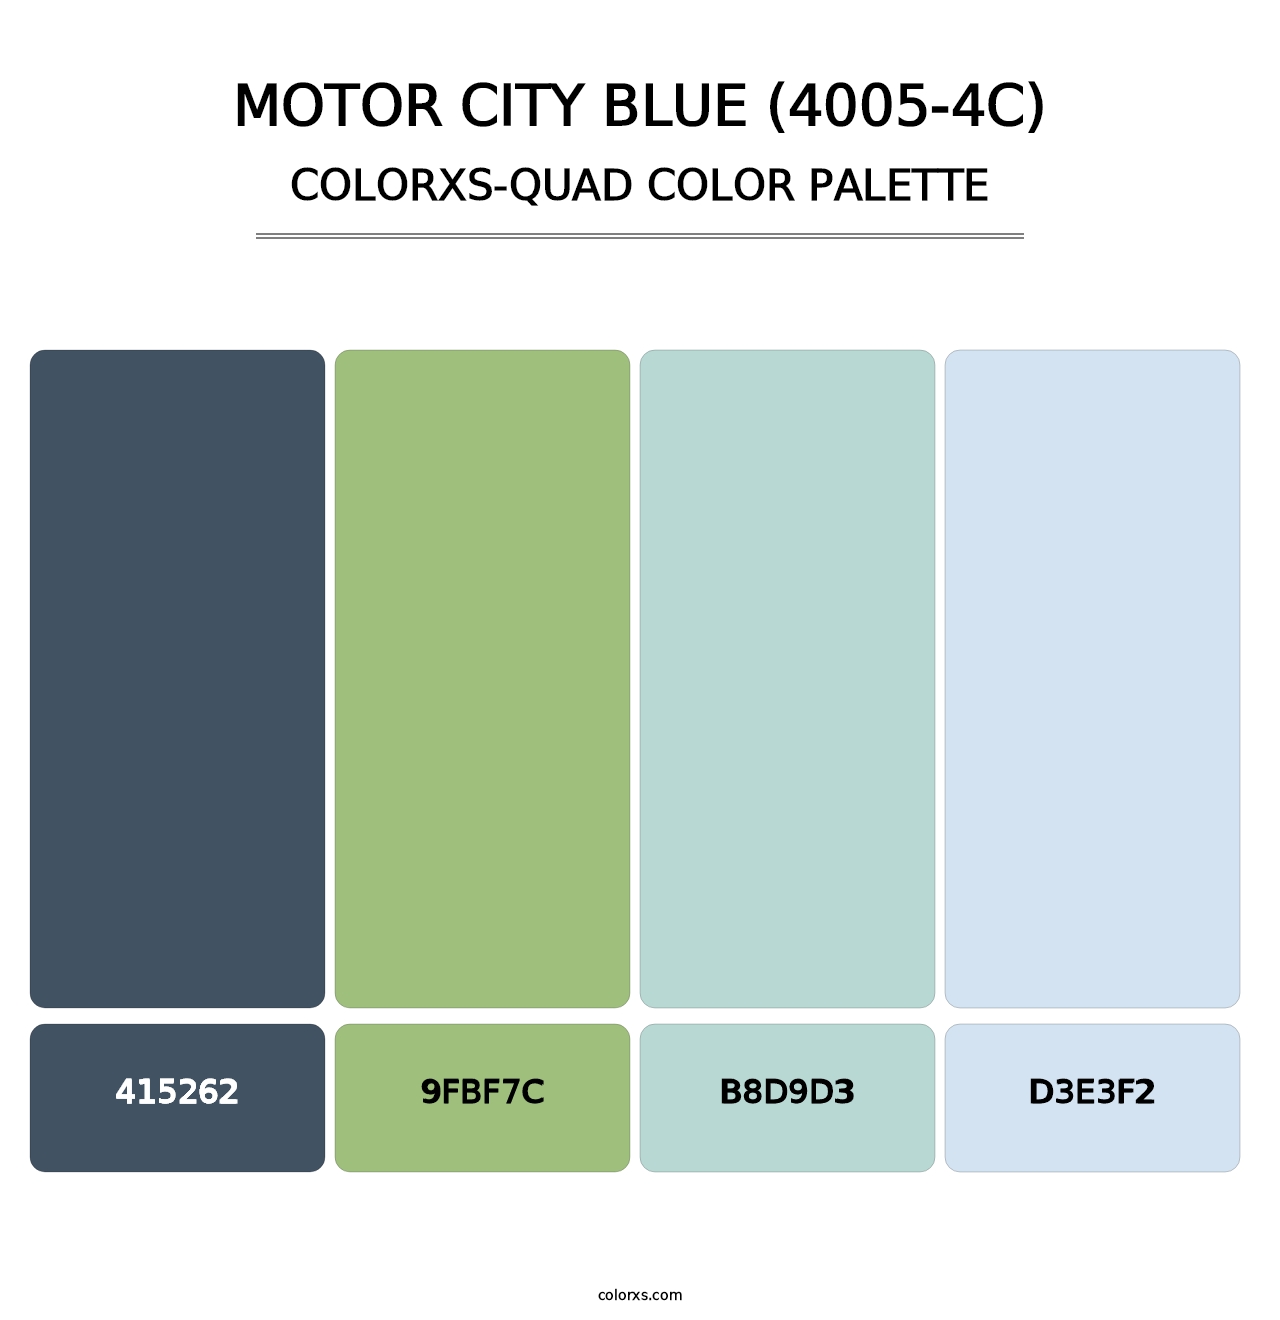 Motor City Blue (4005-4C) - Colorxs Quad Palette